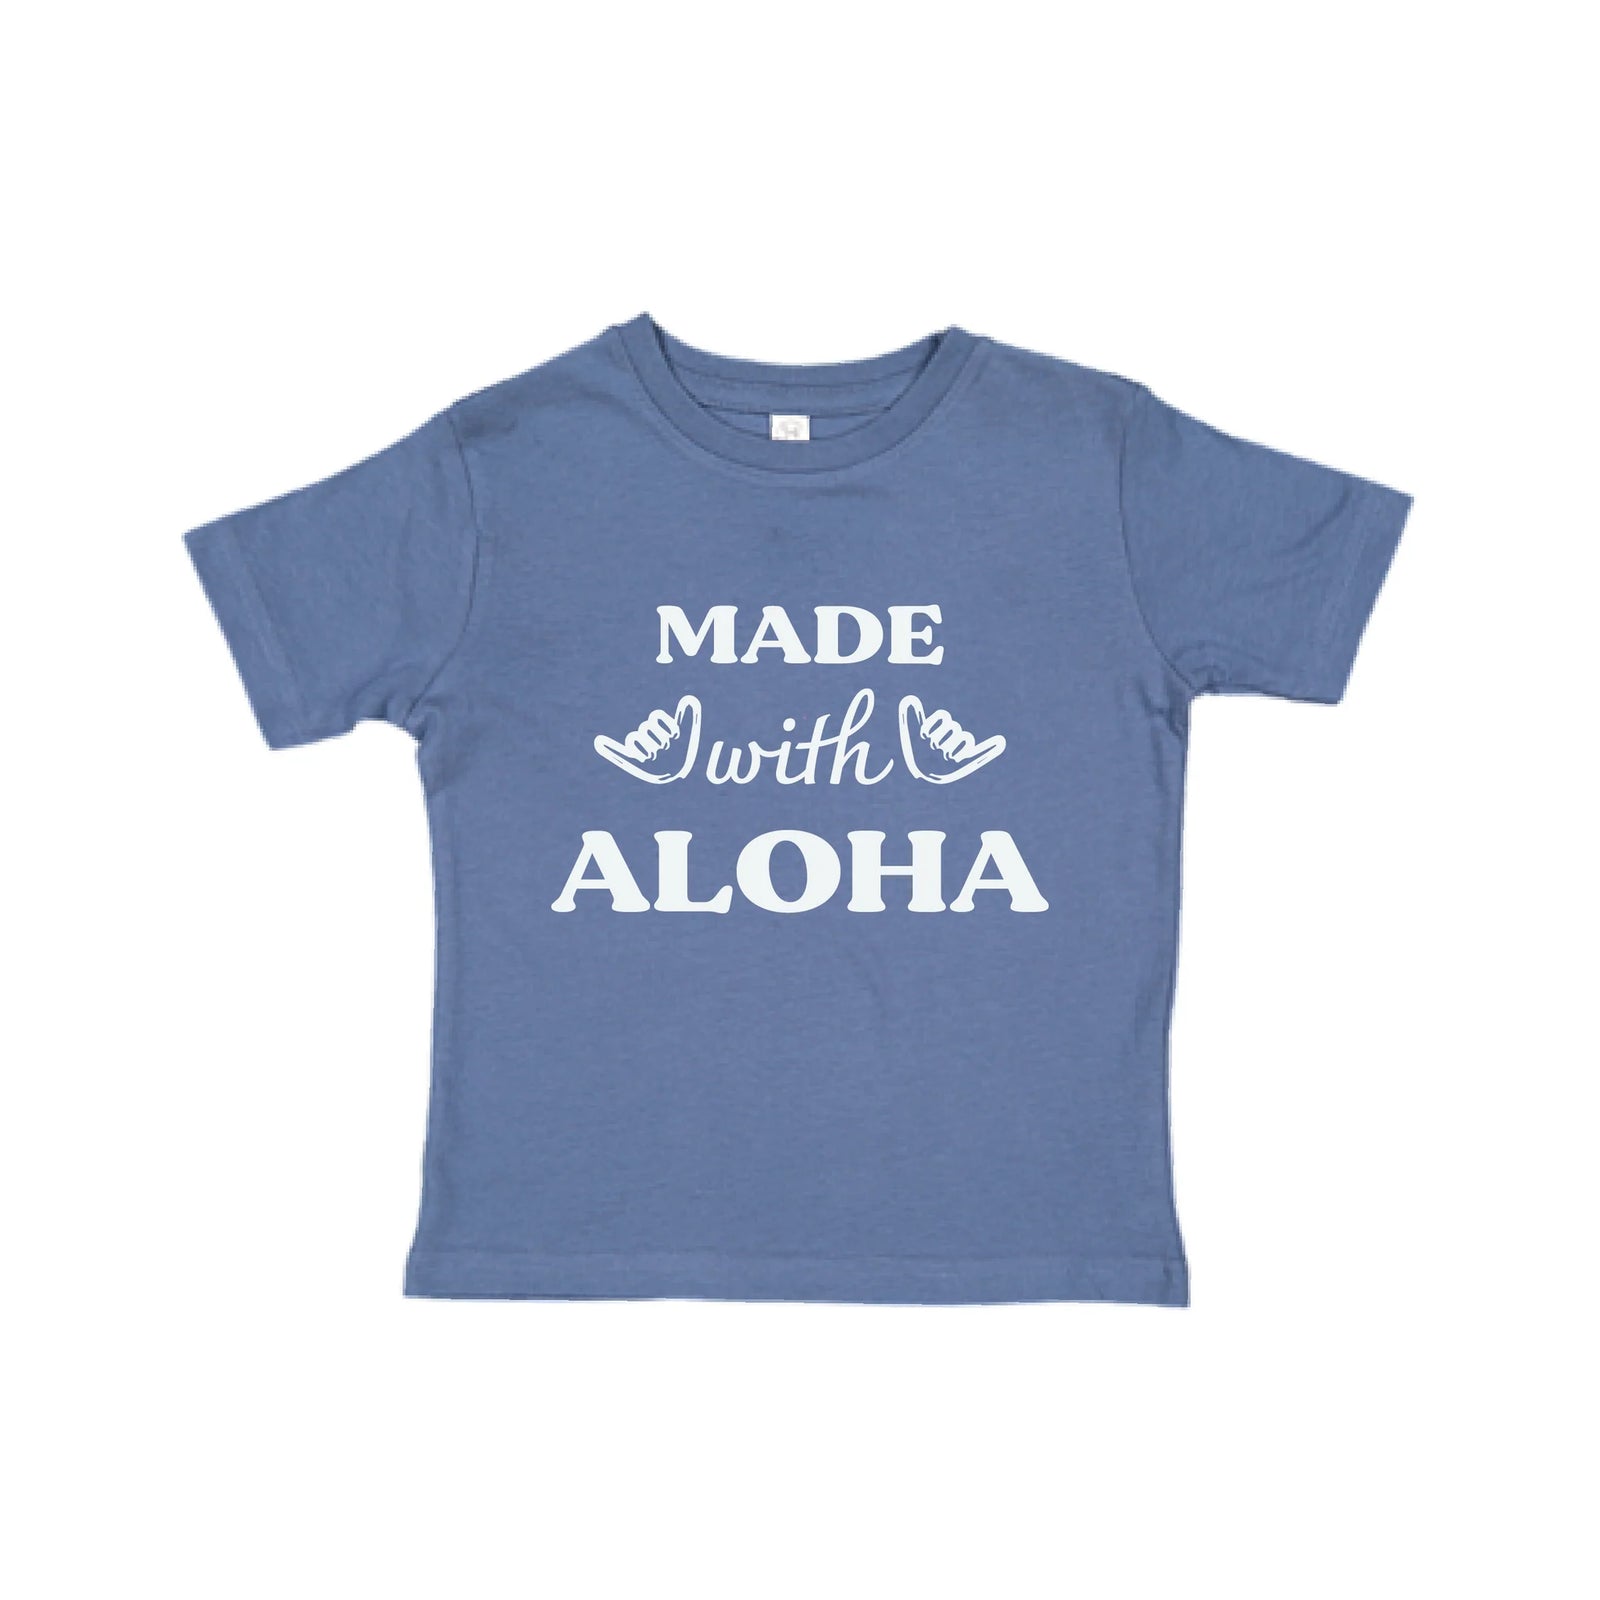 Pop-Up Mākeke - Honolulu Baby Co. - Made With Aloha Keiki T-Shirt - Indigo Front View